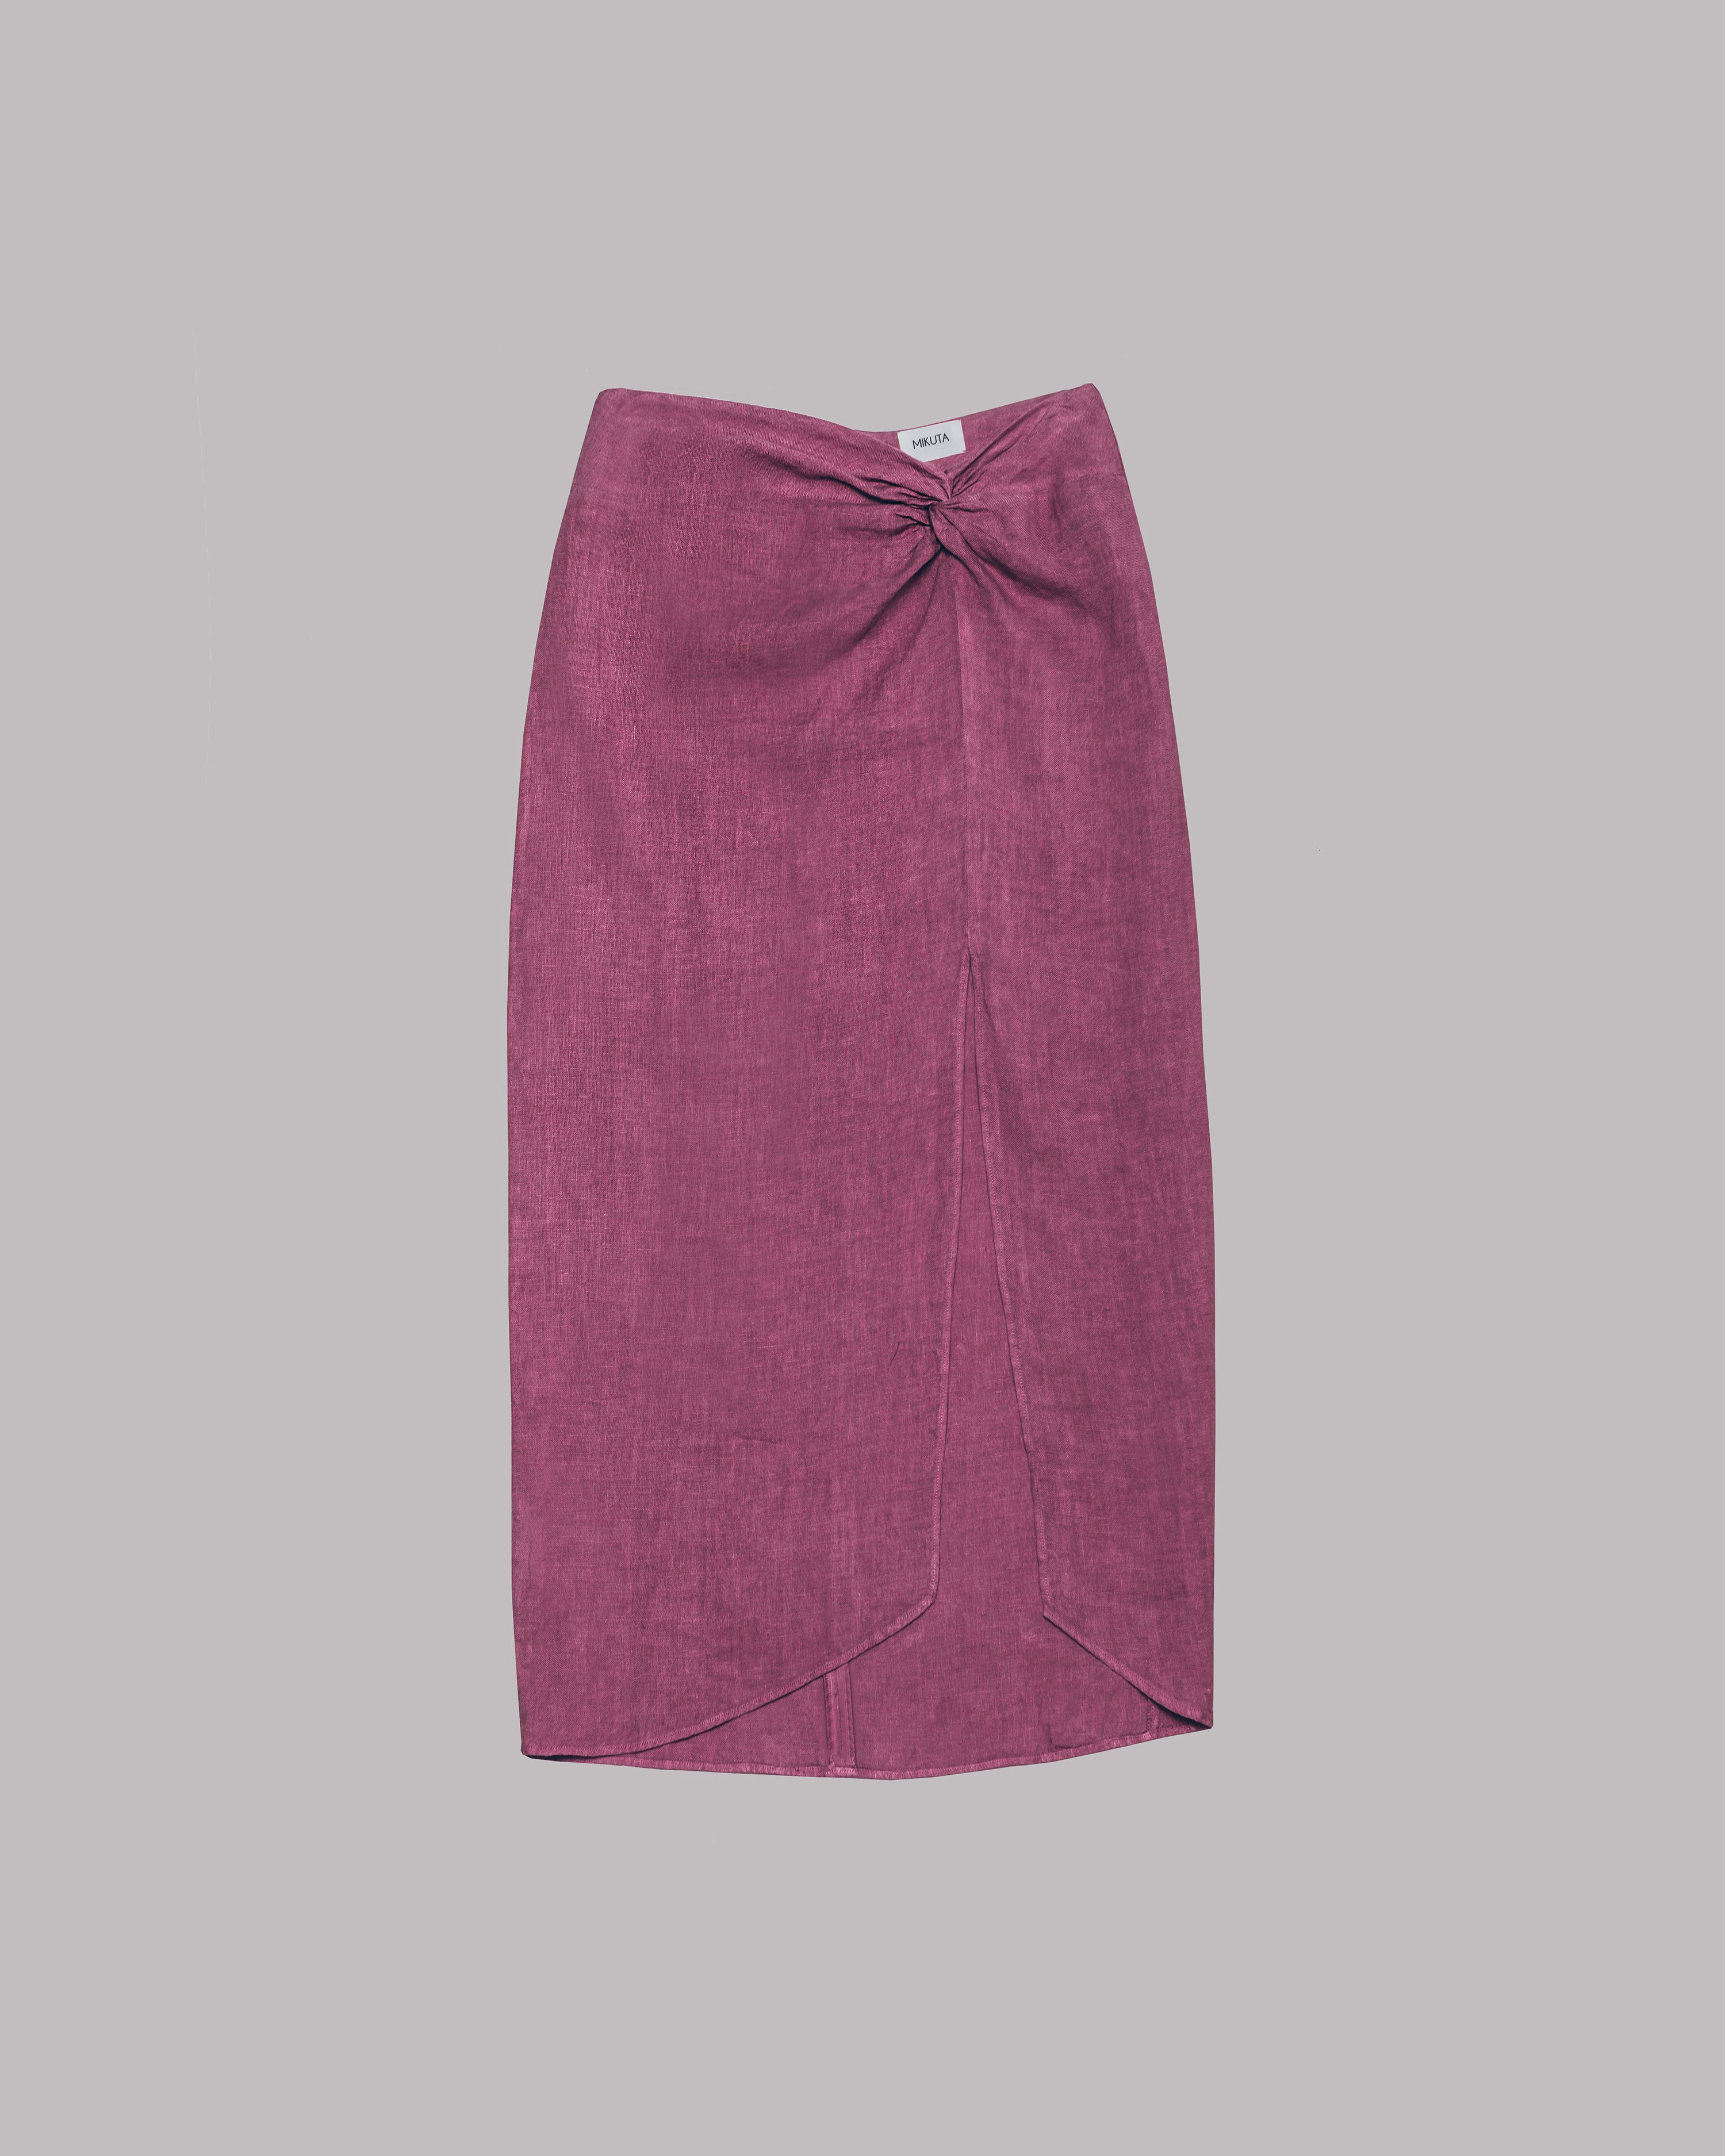 The Pink Long Linen Knot Skirt